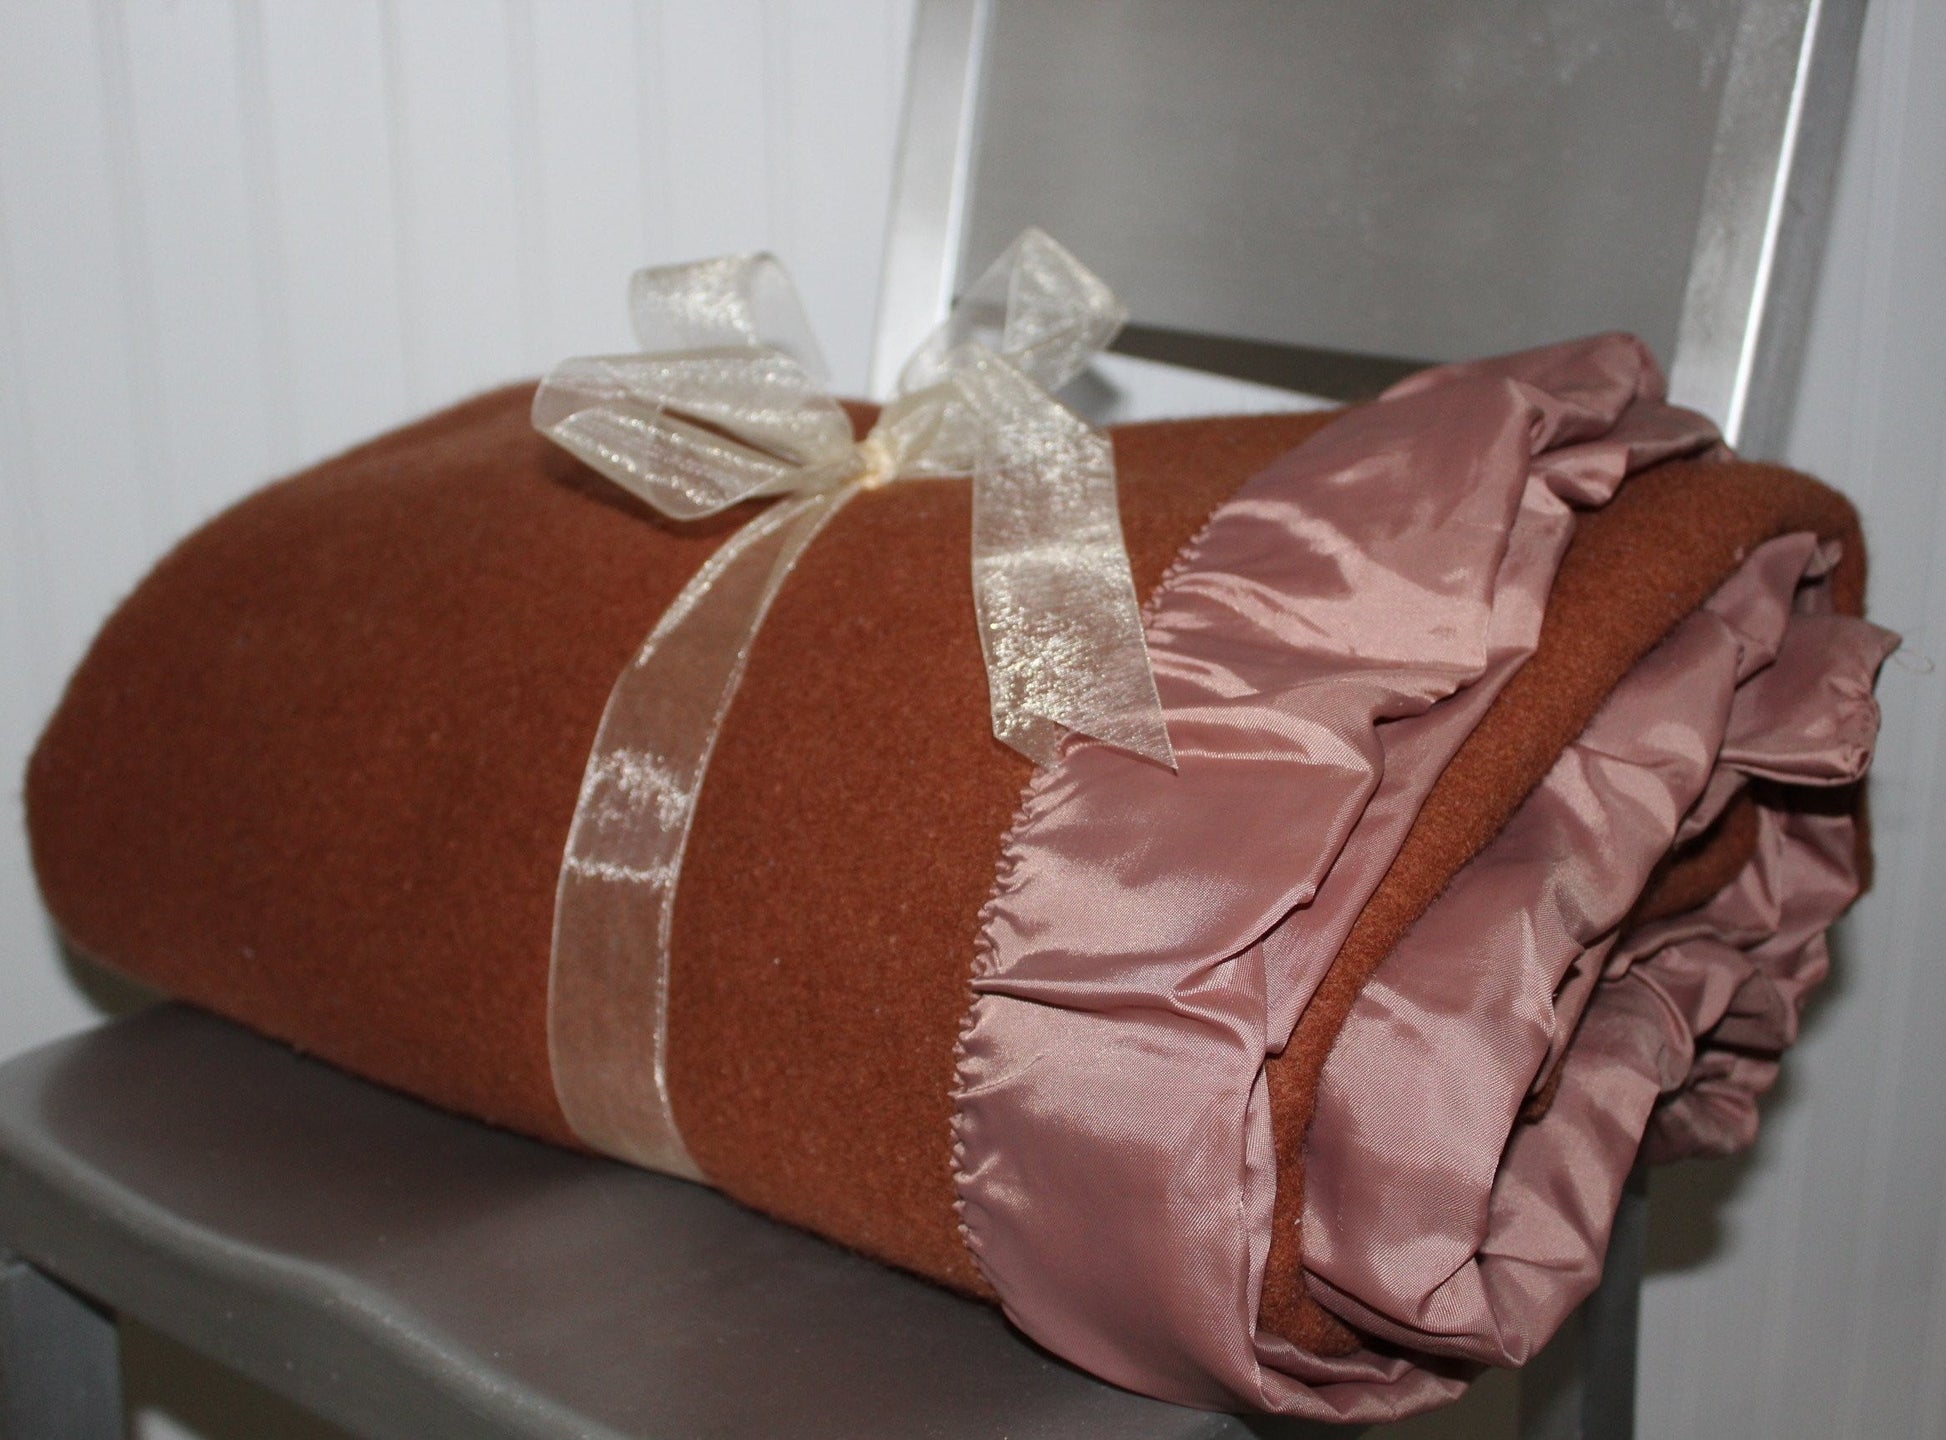 St Marys Fieldcrest Wool Blanket -1950's Toast Brown - 66" X 74" USA